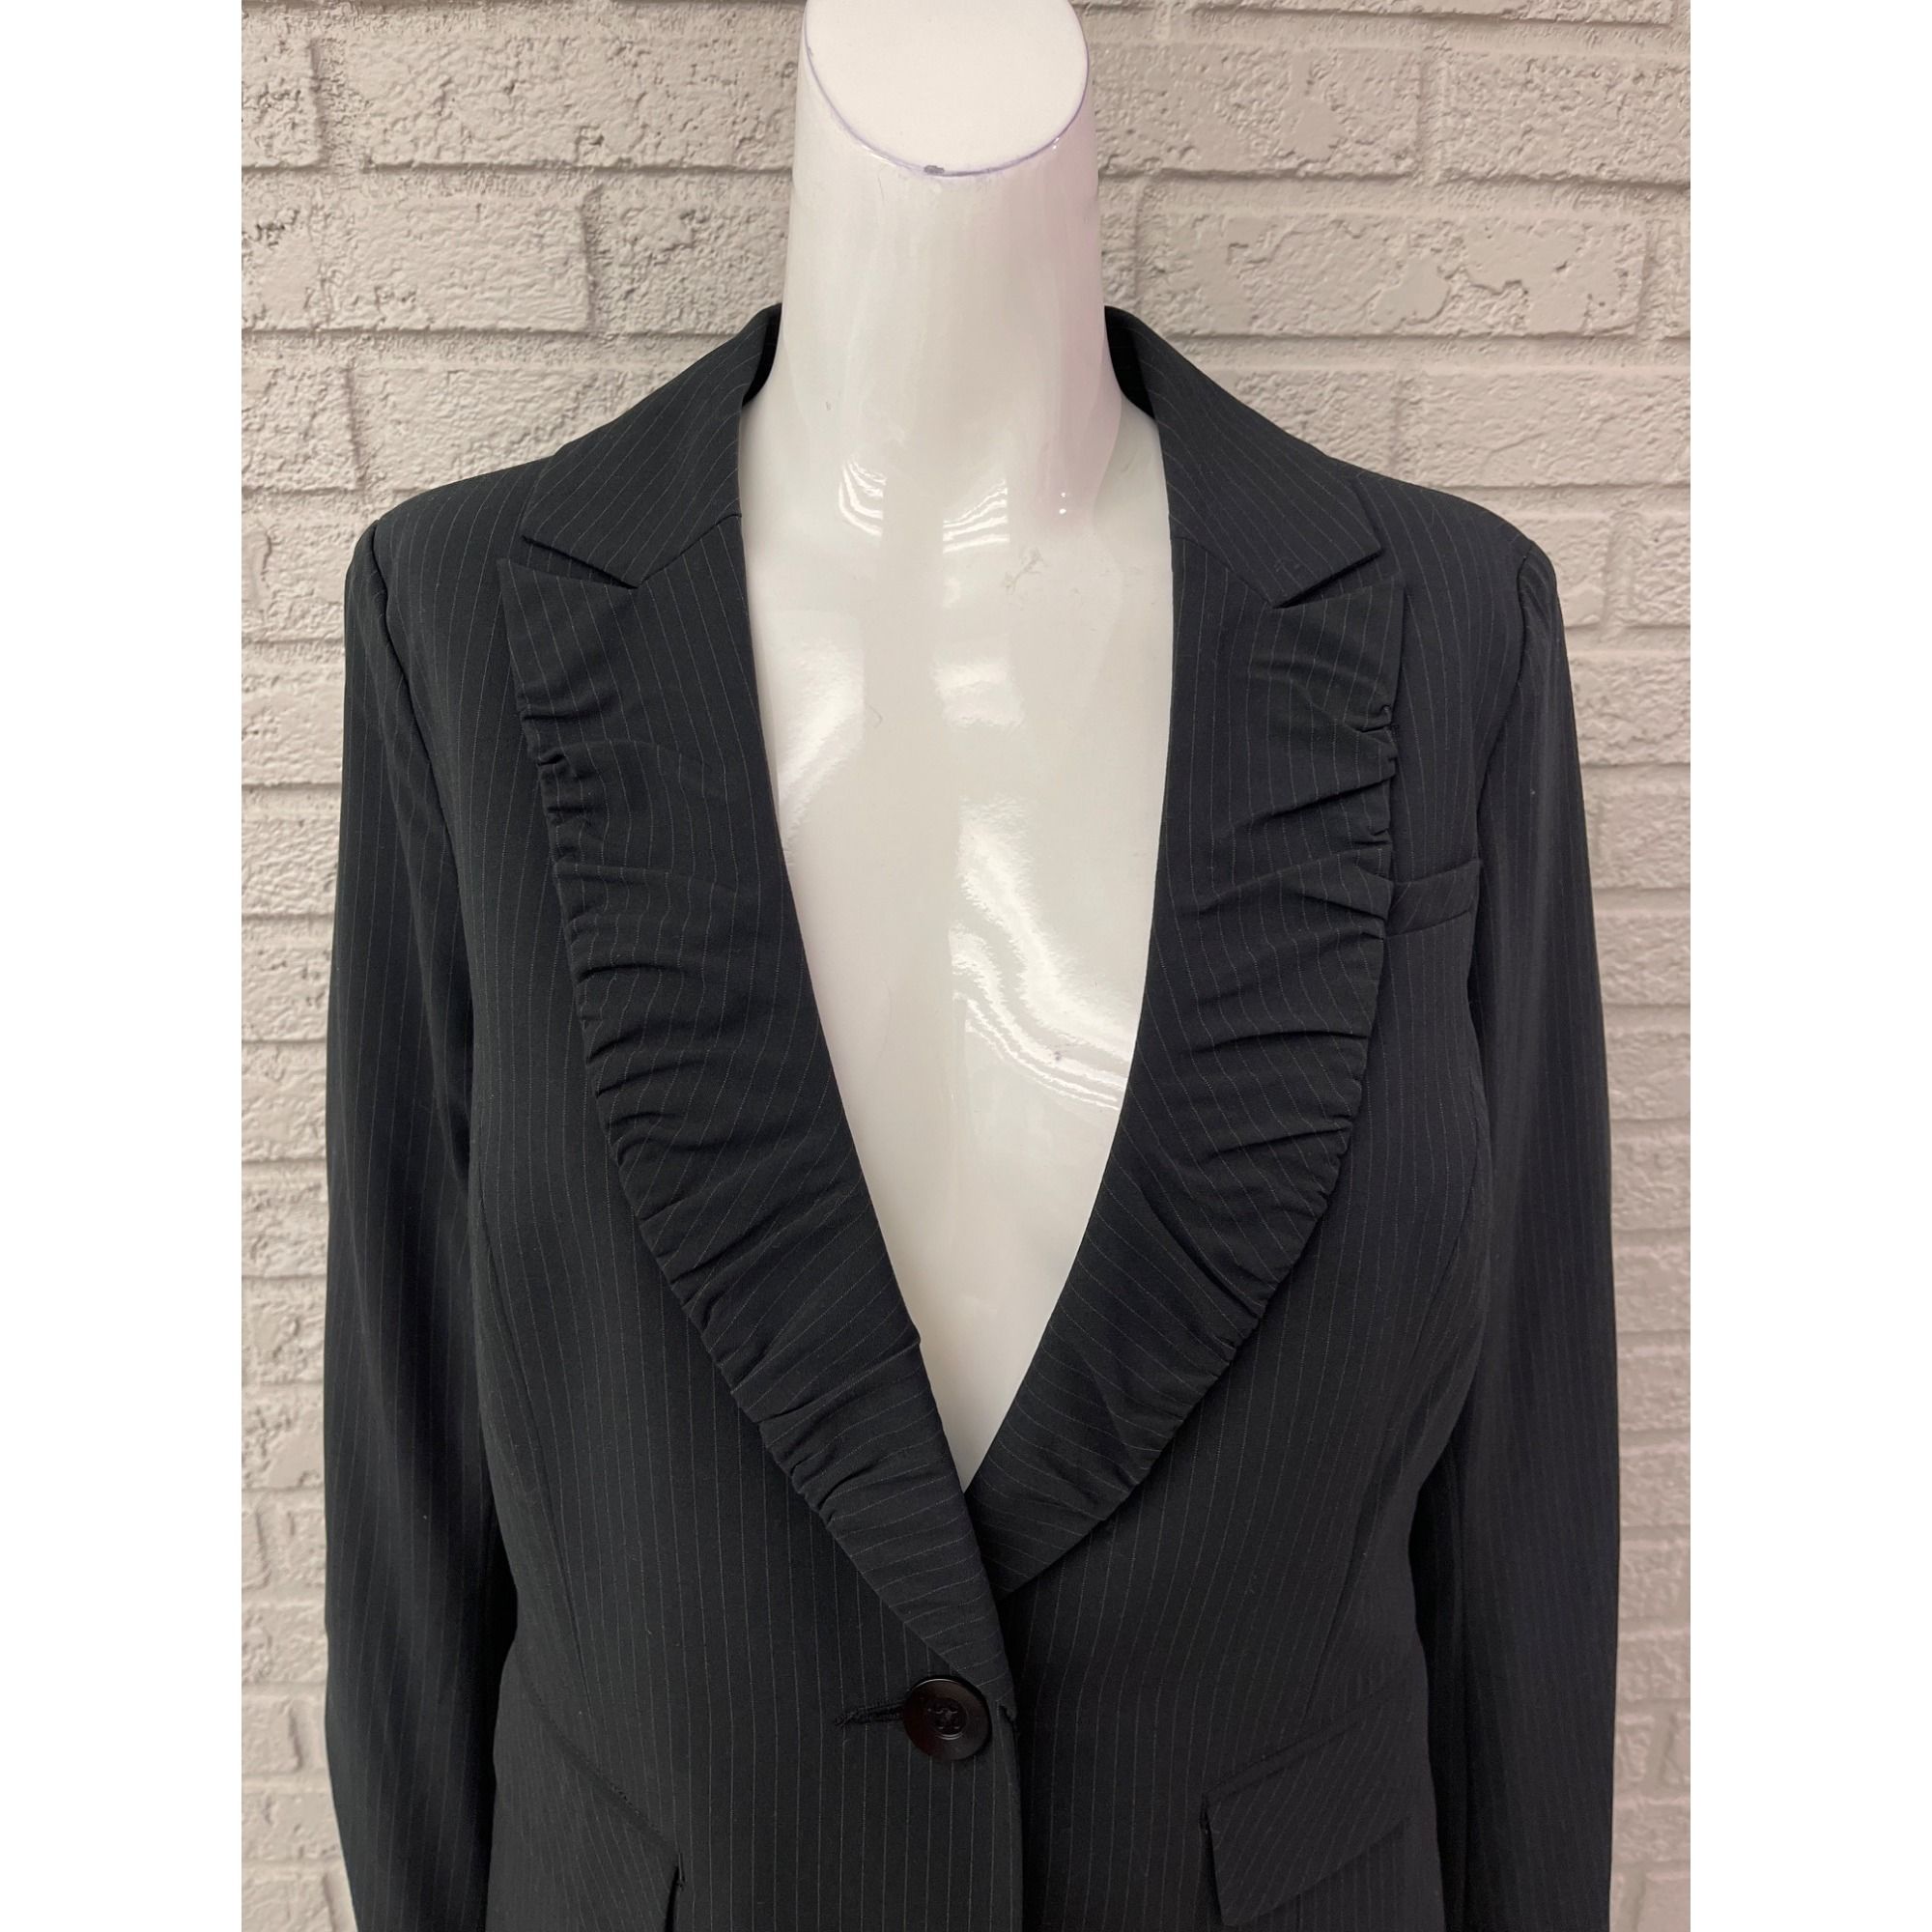 Other Cabi Black Pin Striped Pant 2 Pcs Suit Set Jacket 4 Pant 6 Size S / US 4 / IT 40 - 5 Thumbnail